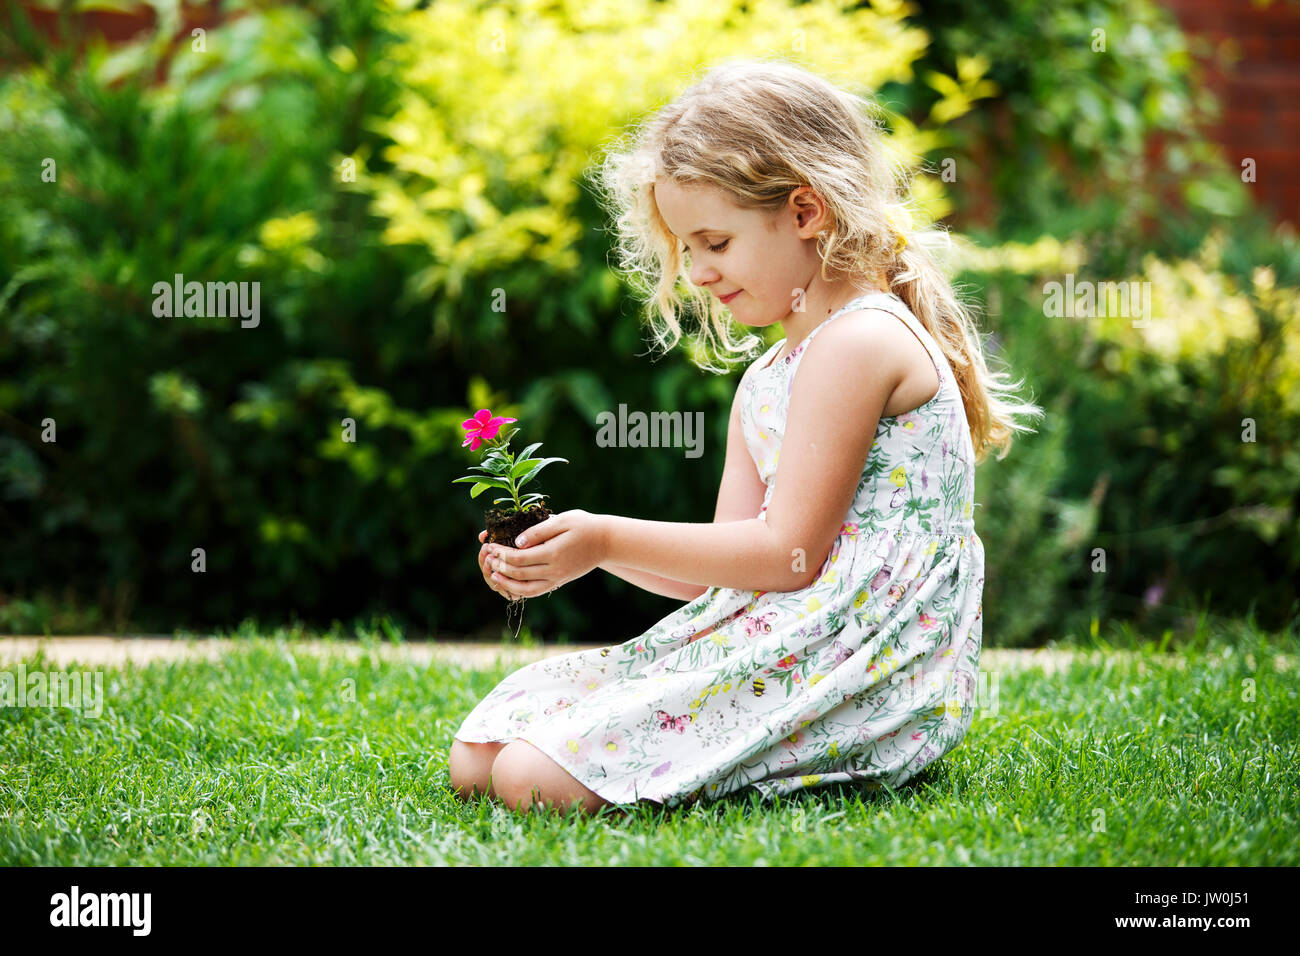 Rubia Chica sujetando flor joven planta en manos sobre fondo verde Foto de stock